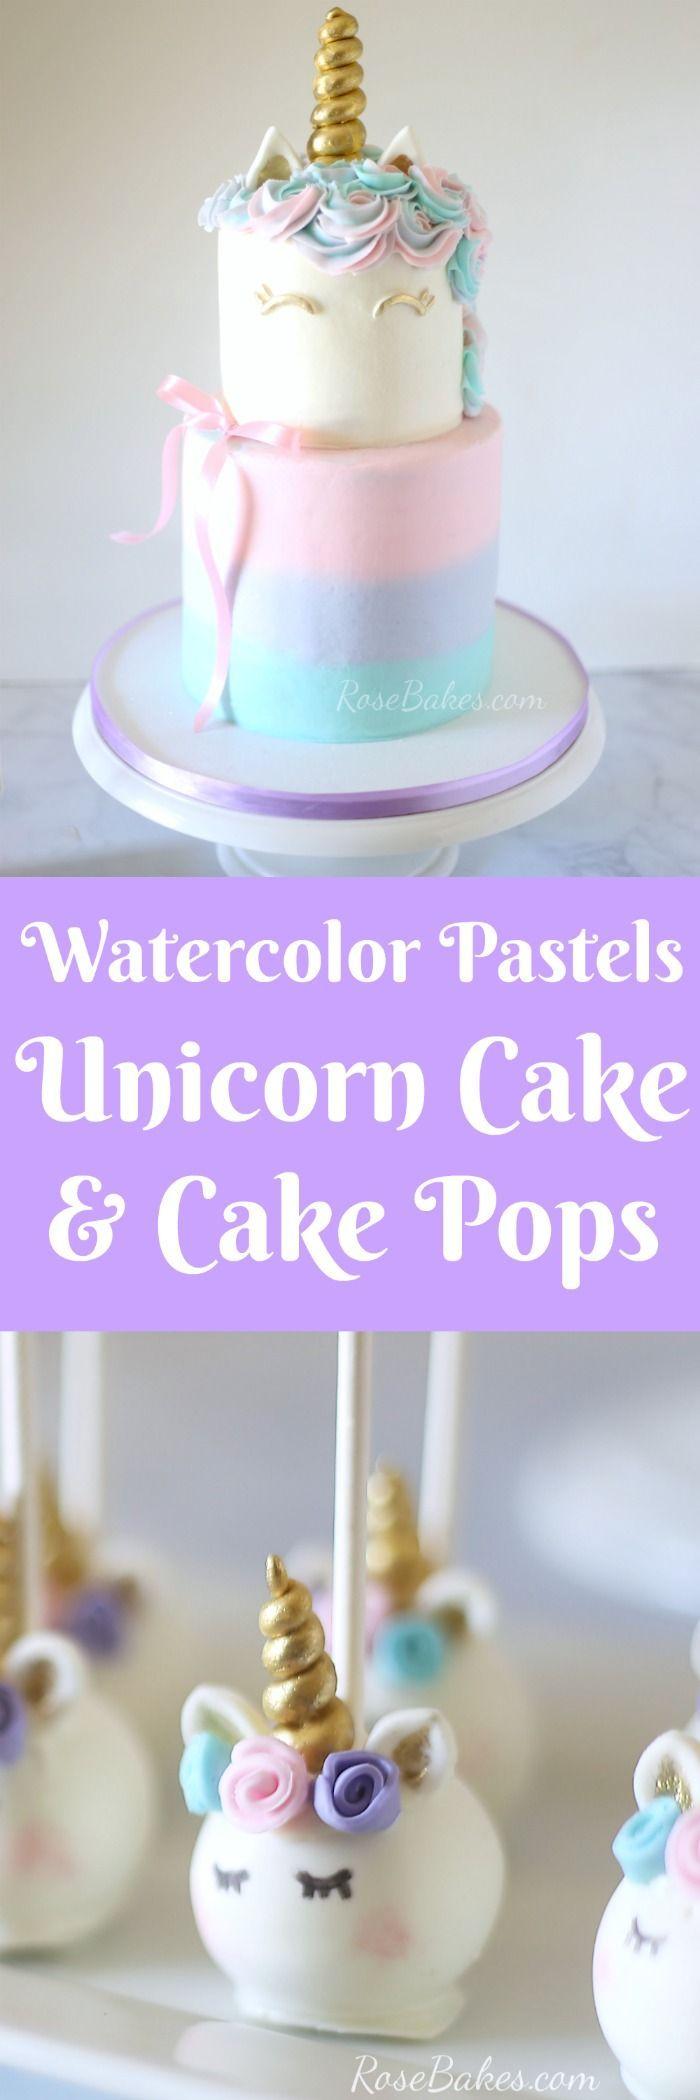 Свадьба - Pastel Watercolors Unicorn Cake And Unicorn Cake Pops